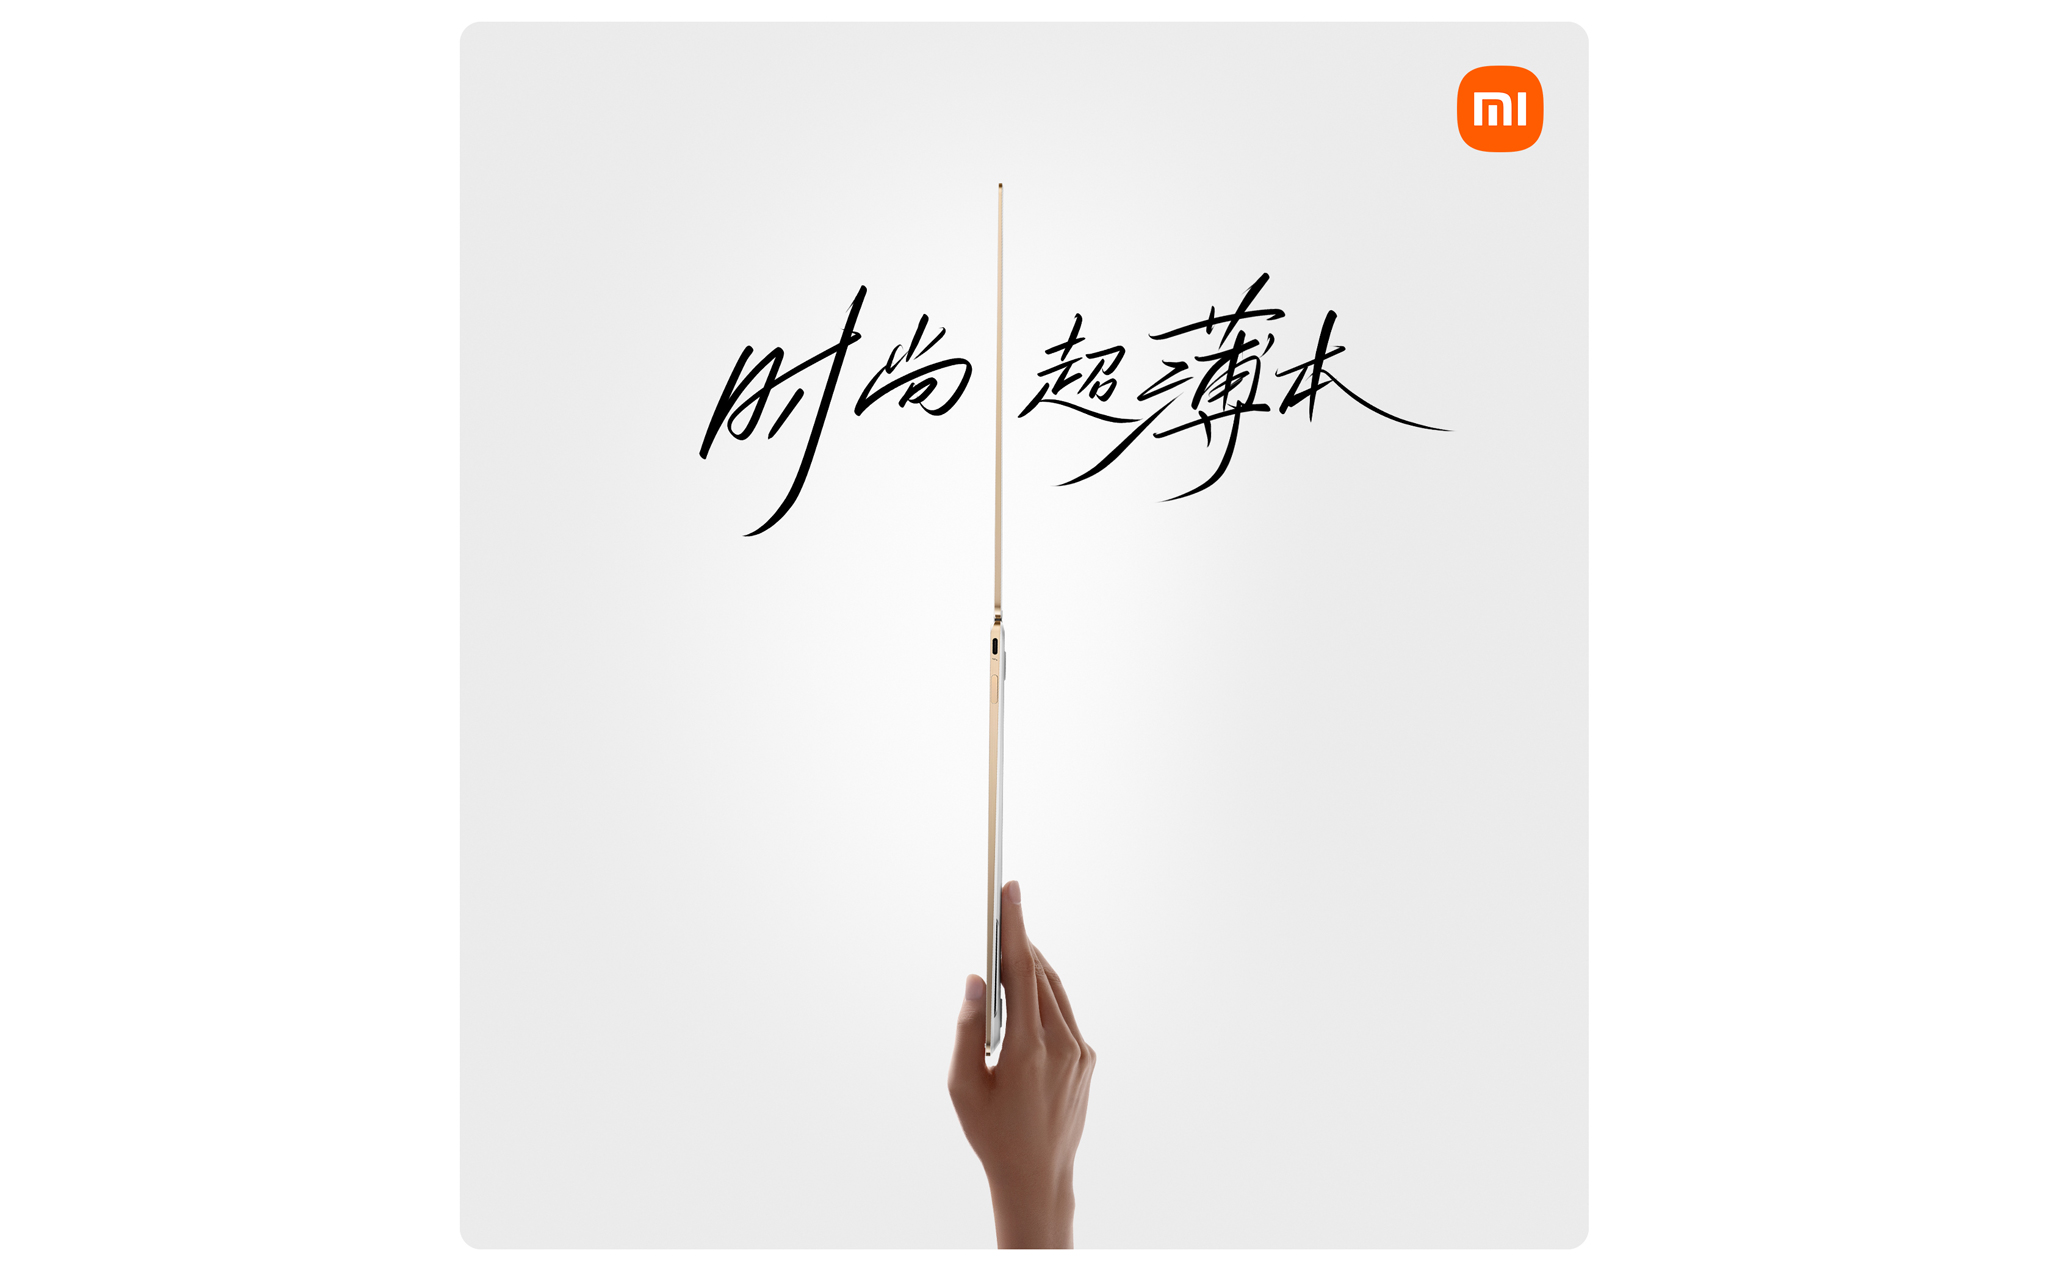 Xiaomi Book Air 13